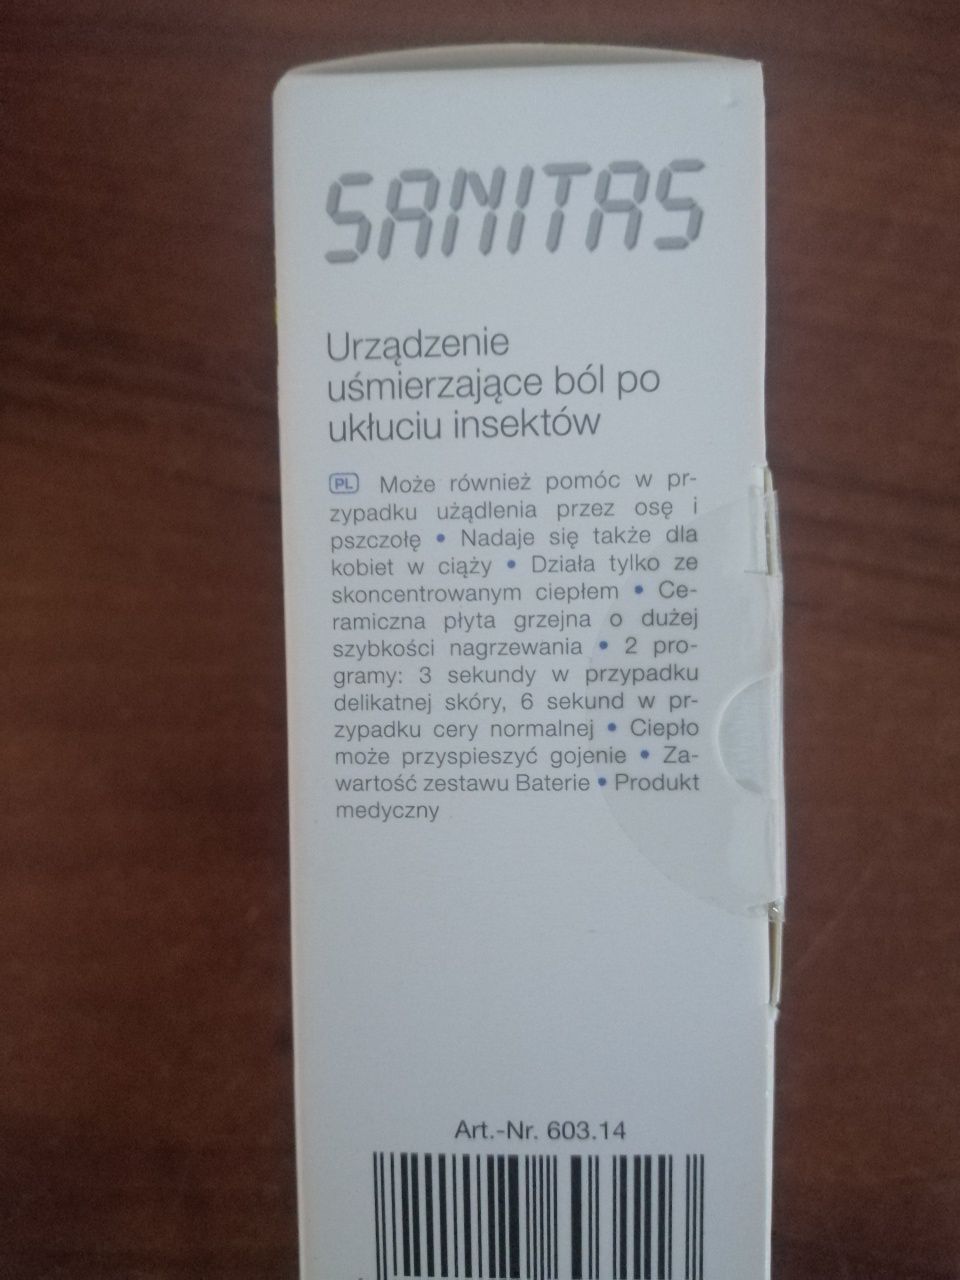 Sanitas SBR 55 urządzenie uśmierzające ból